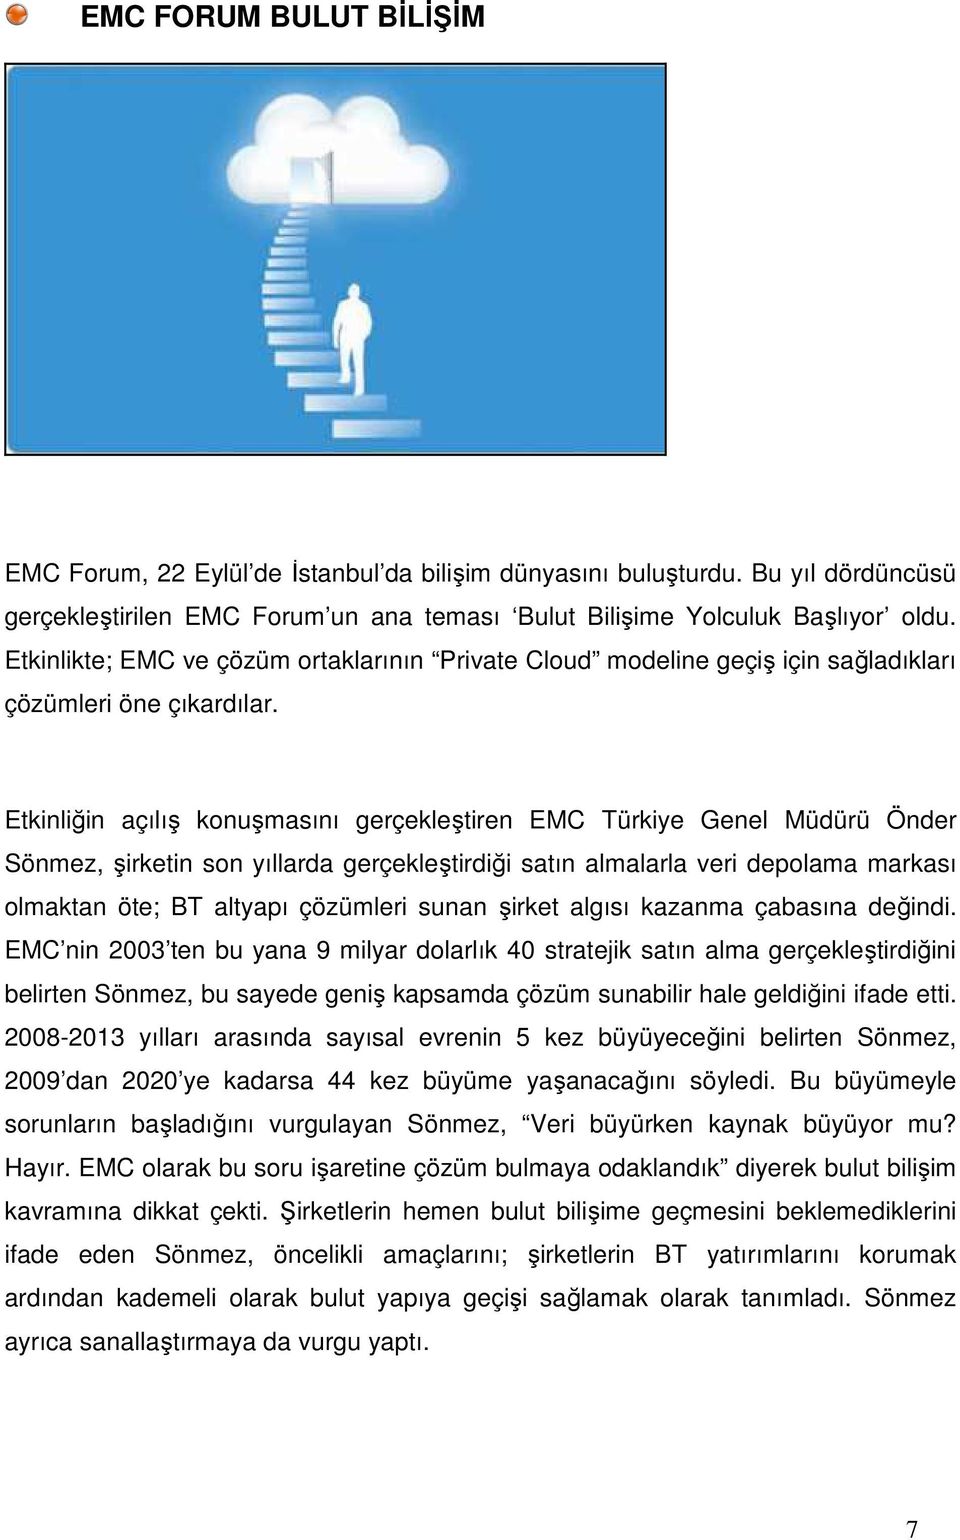 Etkinliğin açılış konuşmasını gerçekleştiren EMC Türkiye Genel Müdürü Önder Sönmez, şirketin son yıllarda gerçekleştirdiği satın almalarla veri depolama markası olmaktan öte; BT altyapı çözümleri